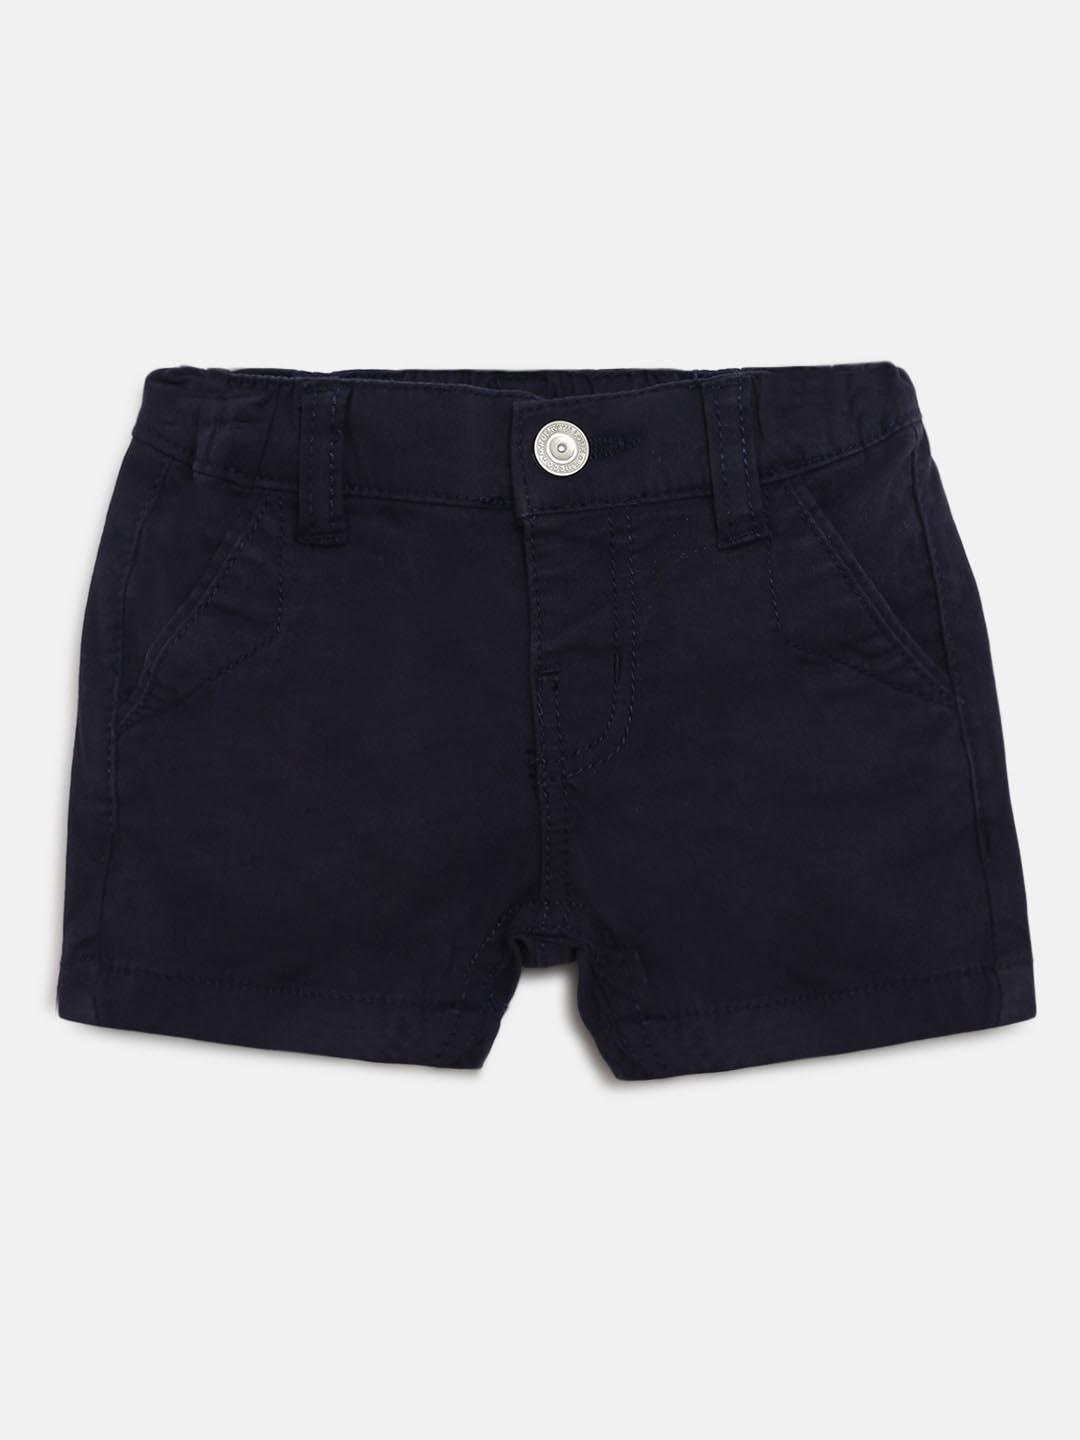 chicco boys navy blue solid regular fit regular shorts